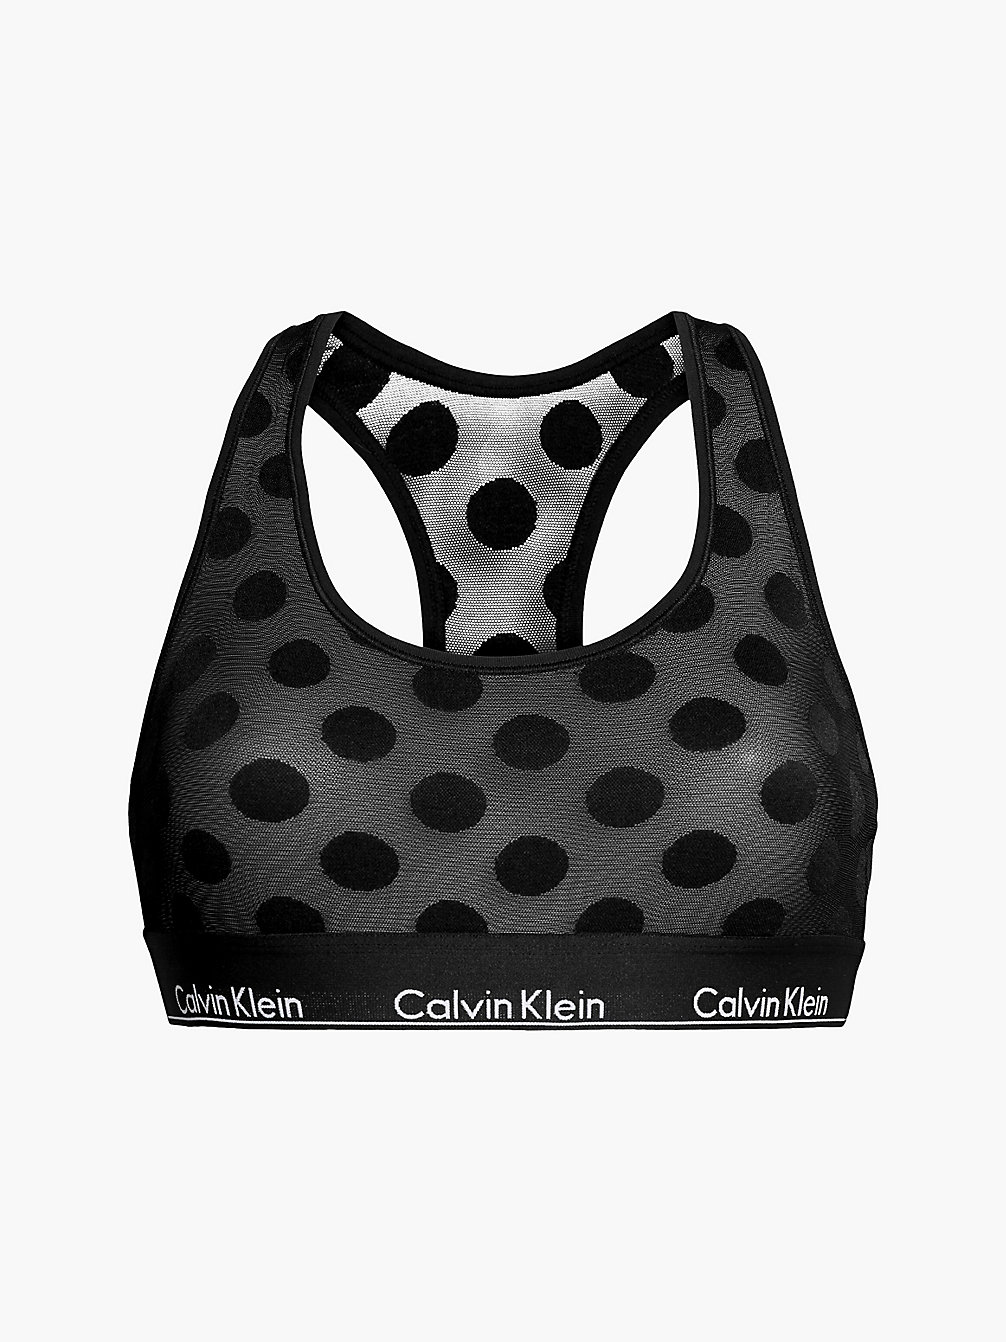 Corpiño - Modern Cotton > BLACK > undefined mujer > Calvin Klein